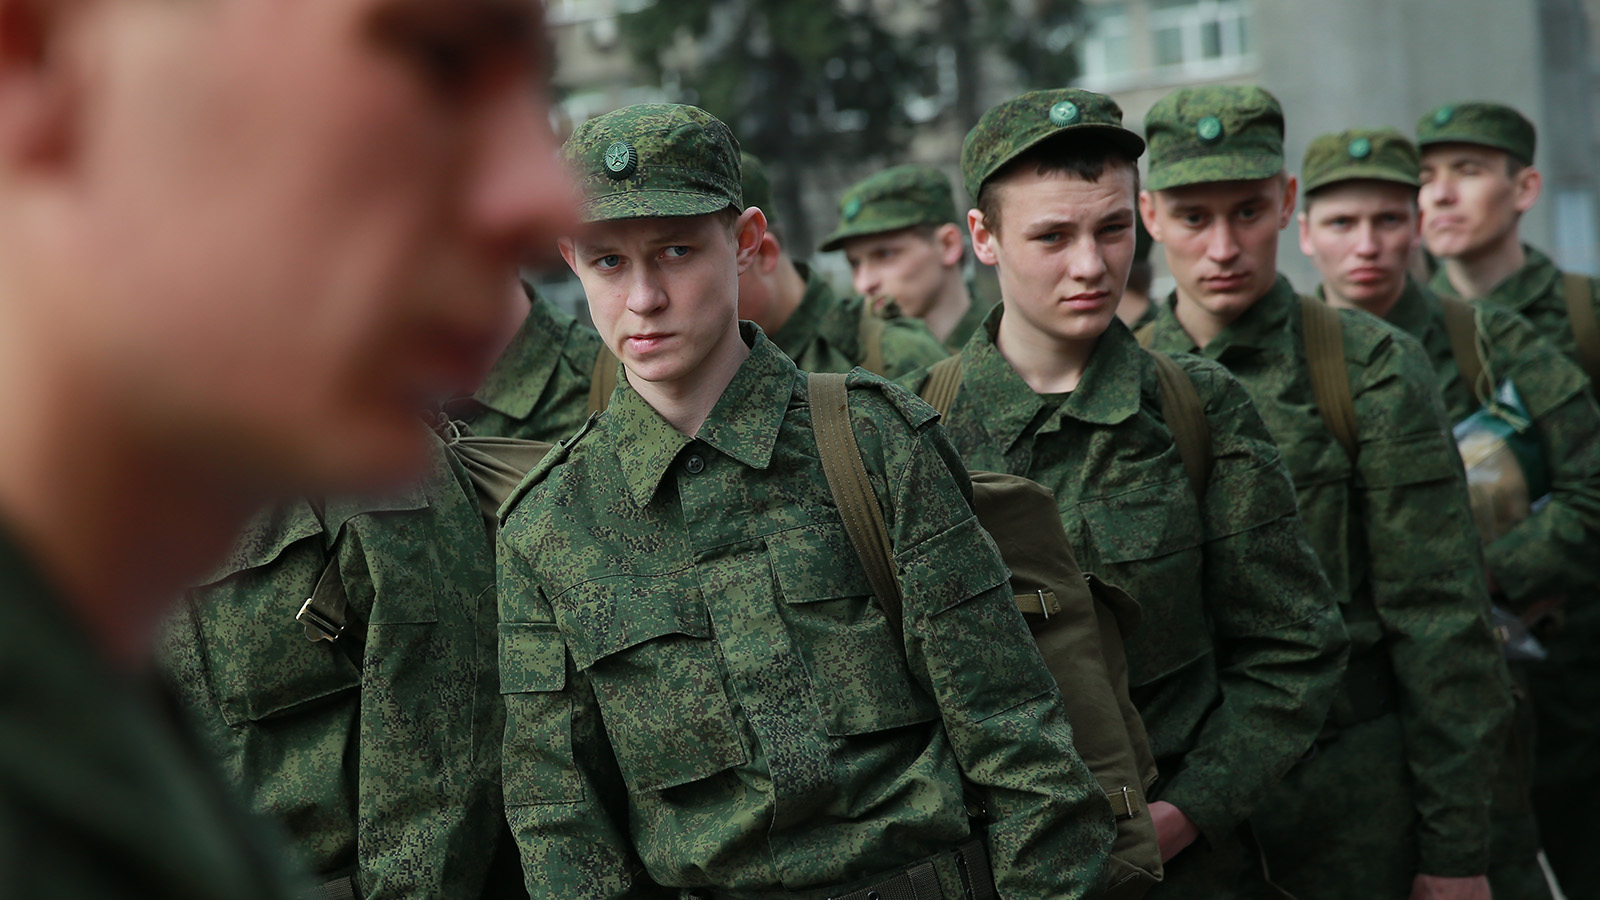  Заберут в армию на 2 года: в Госдуме прозвучало экстренное заявление 